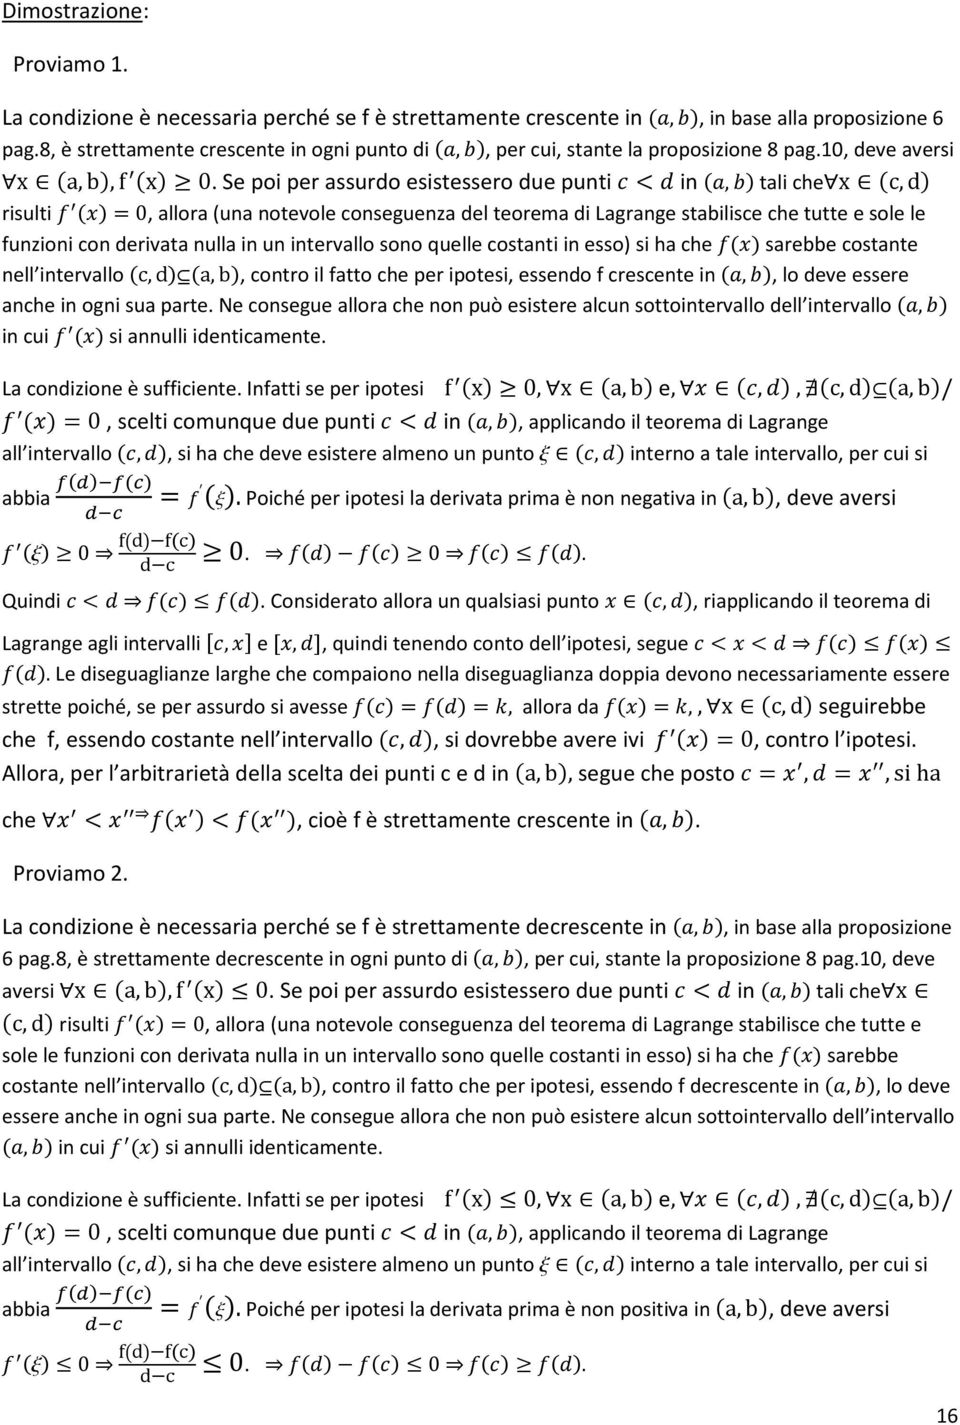 Se poi per assurdo esistessero due punti in, tali chex c, d risulti 0, allora (una notevole conseguenza del teorema di Lagrange stabilisce che tutte e sole le funzioni con derivata nulla in un